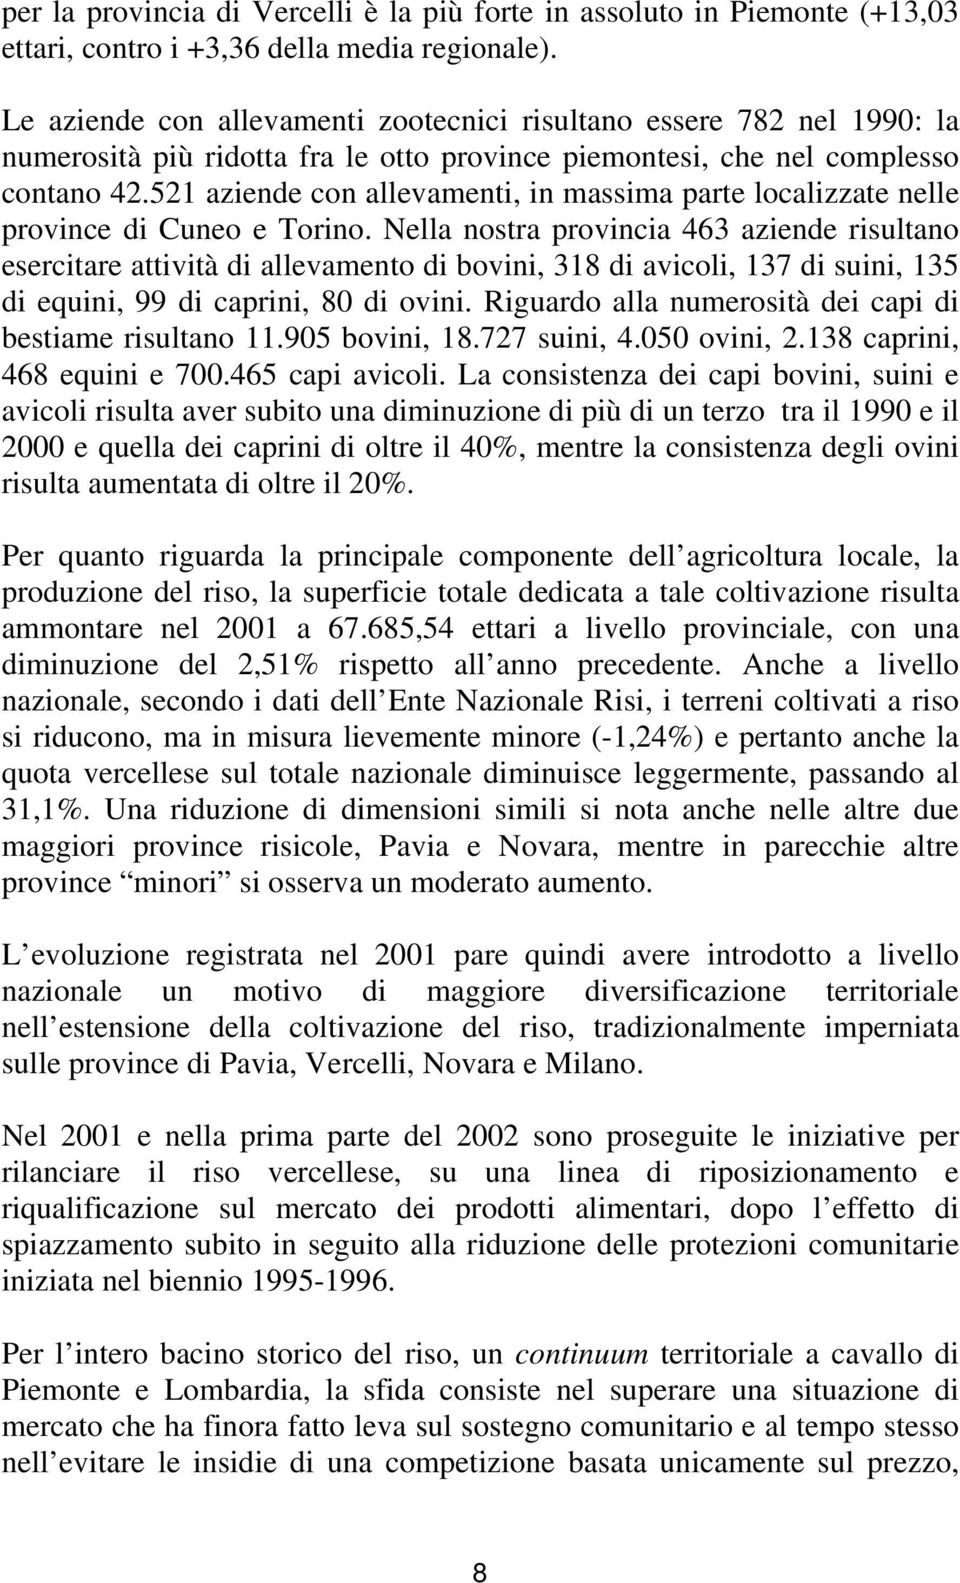 521 aziende con allevamenti, in massima parte localizzate nelle province di Cuneo e Torino.